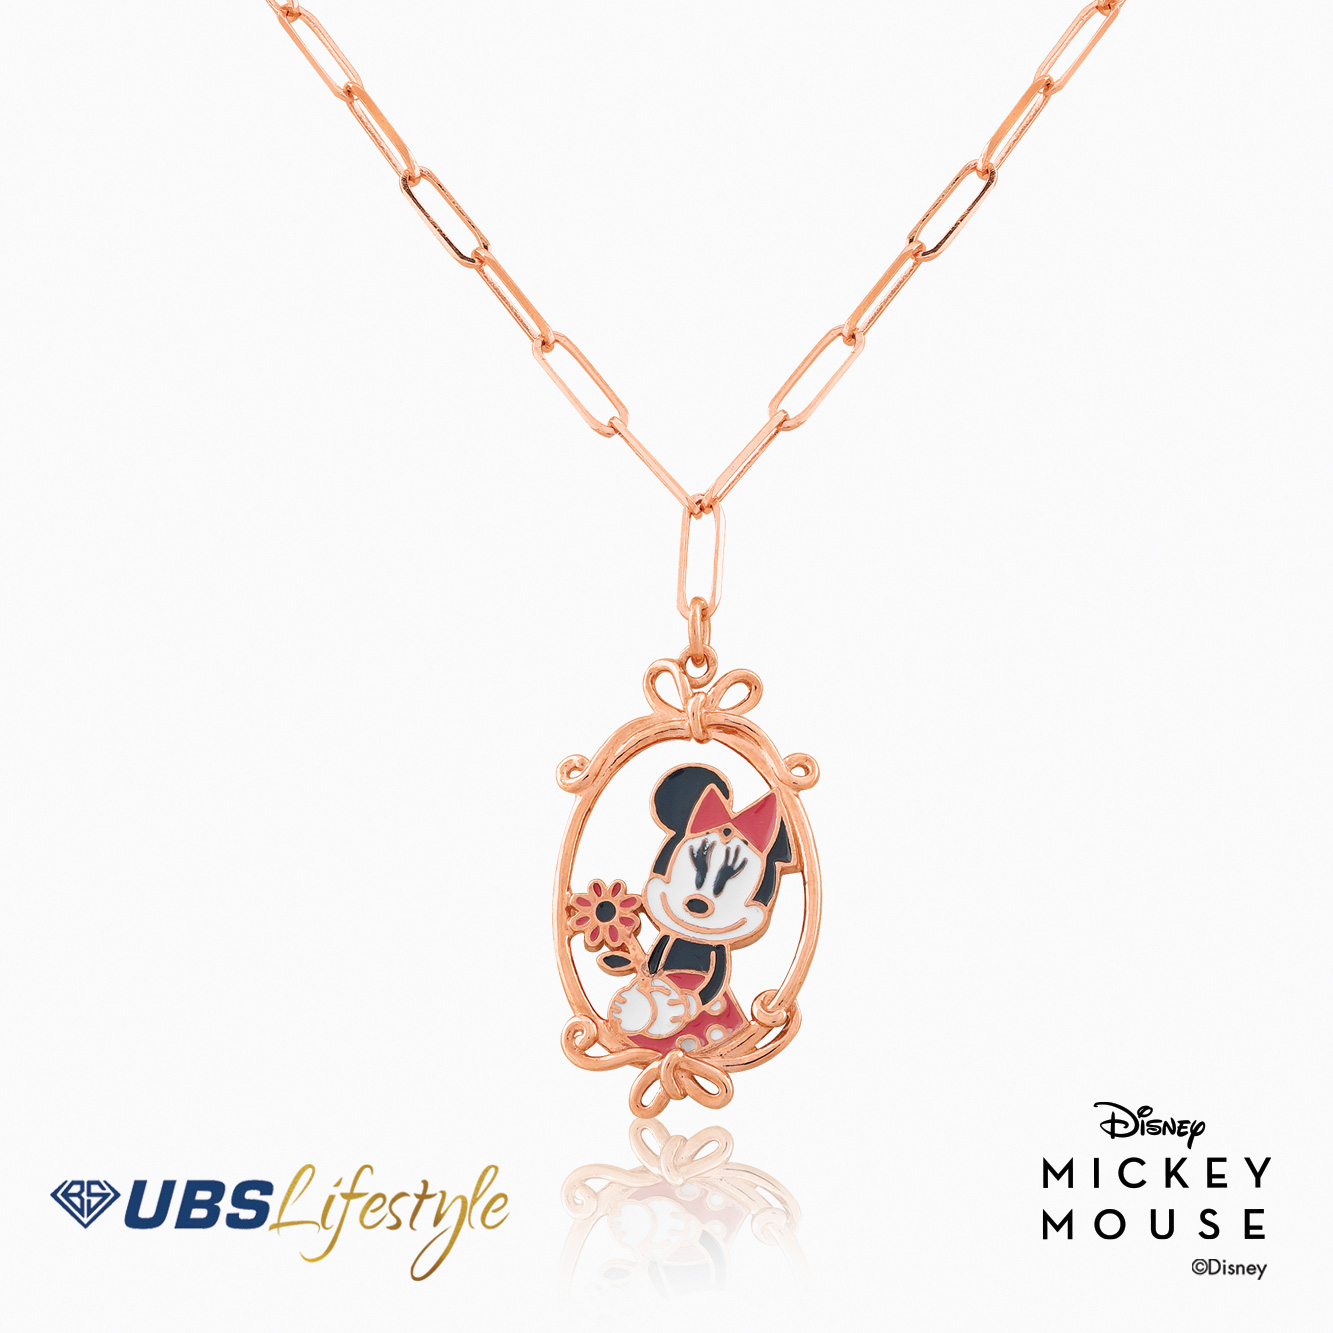 UBS Kalung Emas Disney Minnie Mouse - Kky0282 - 17K